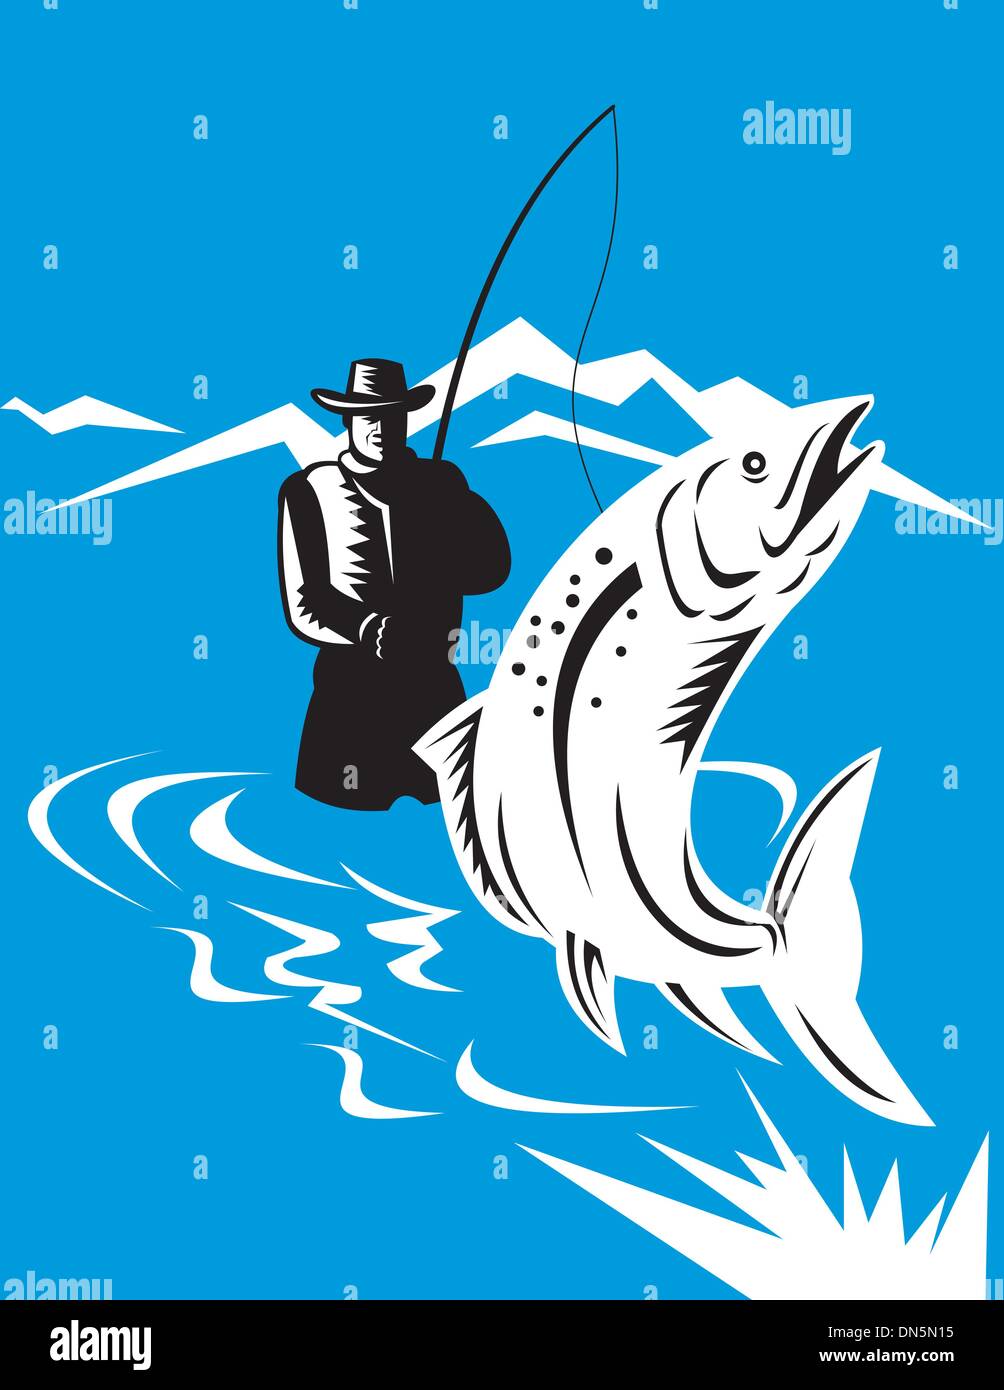 Le saut de la truite a chancelé par fly fisherman Illustration de Vecteur